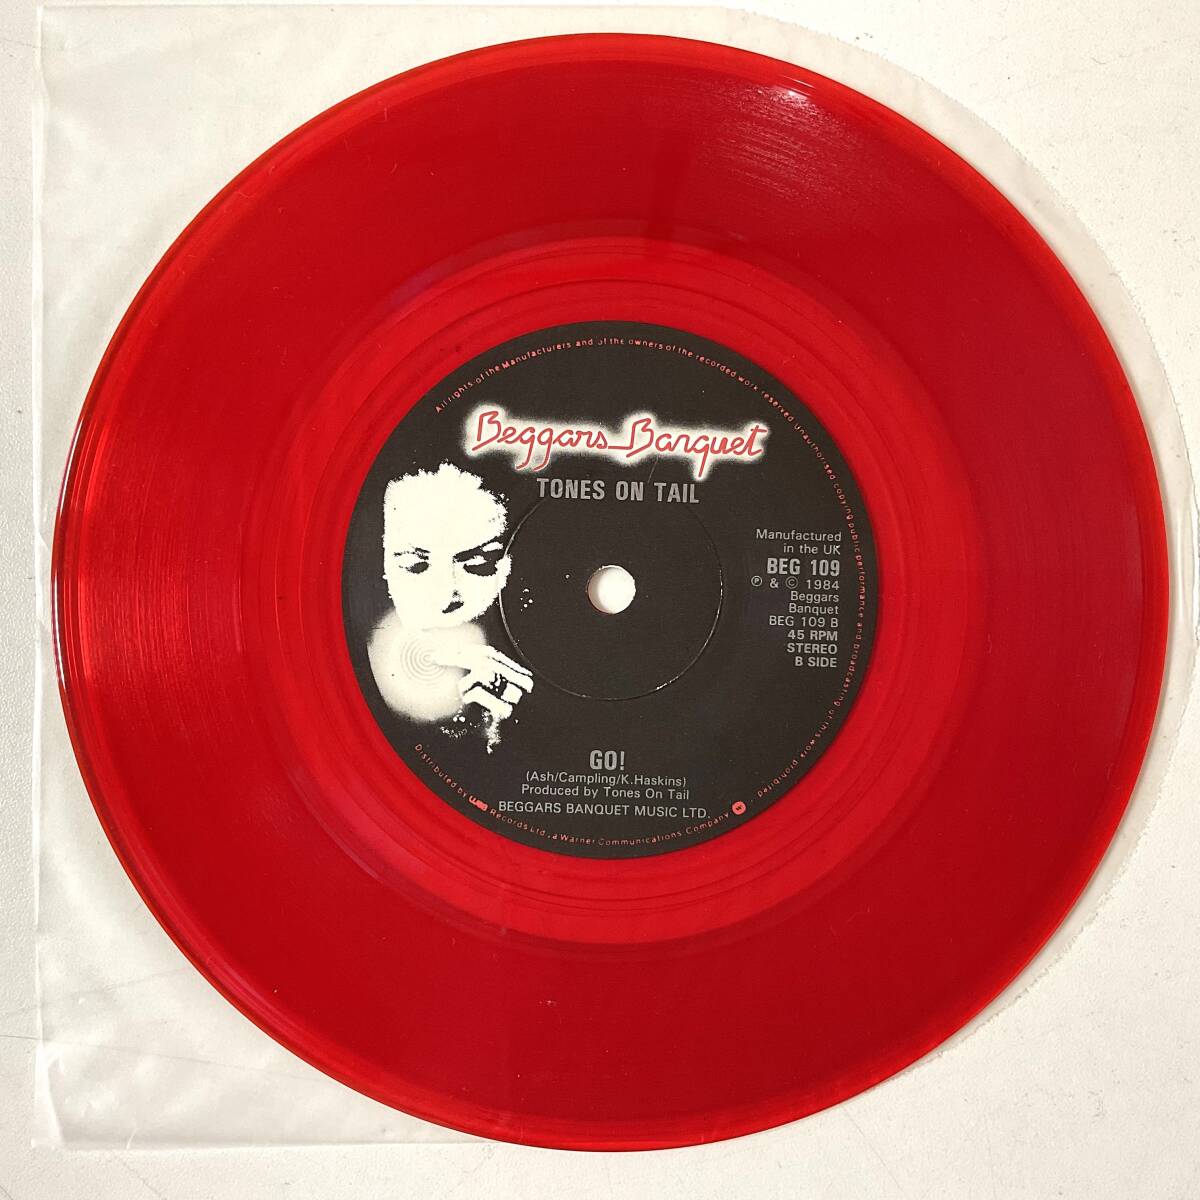 MEGA RARE LIMITED RED VINYL Tones On Tail - Lions / Go! UK 1984 ORIGINAL Bauhaus Daniel Ash *7“ EPレコード LICCA*RECORDS 142 美盤_画像4